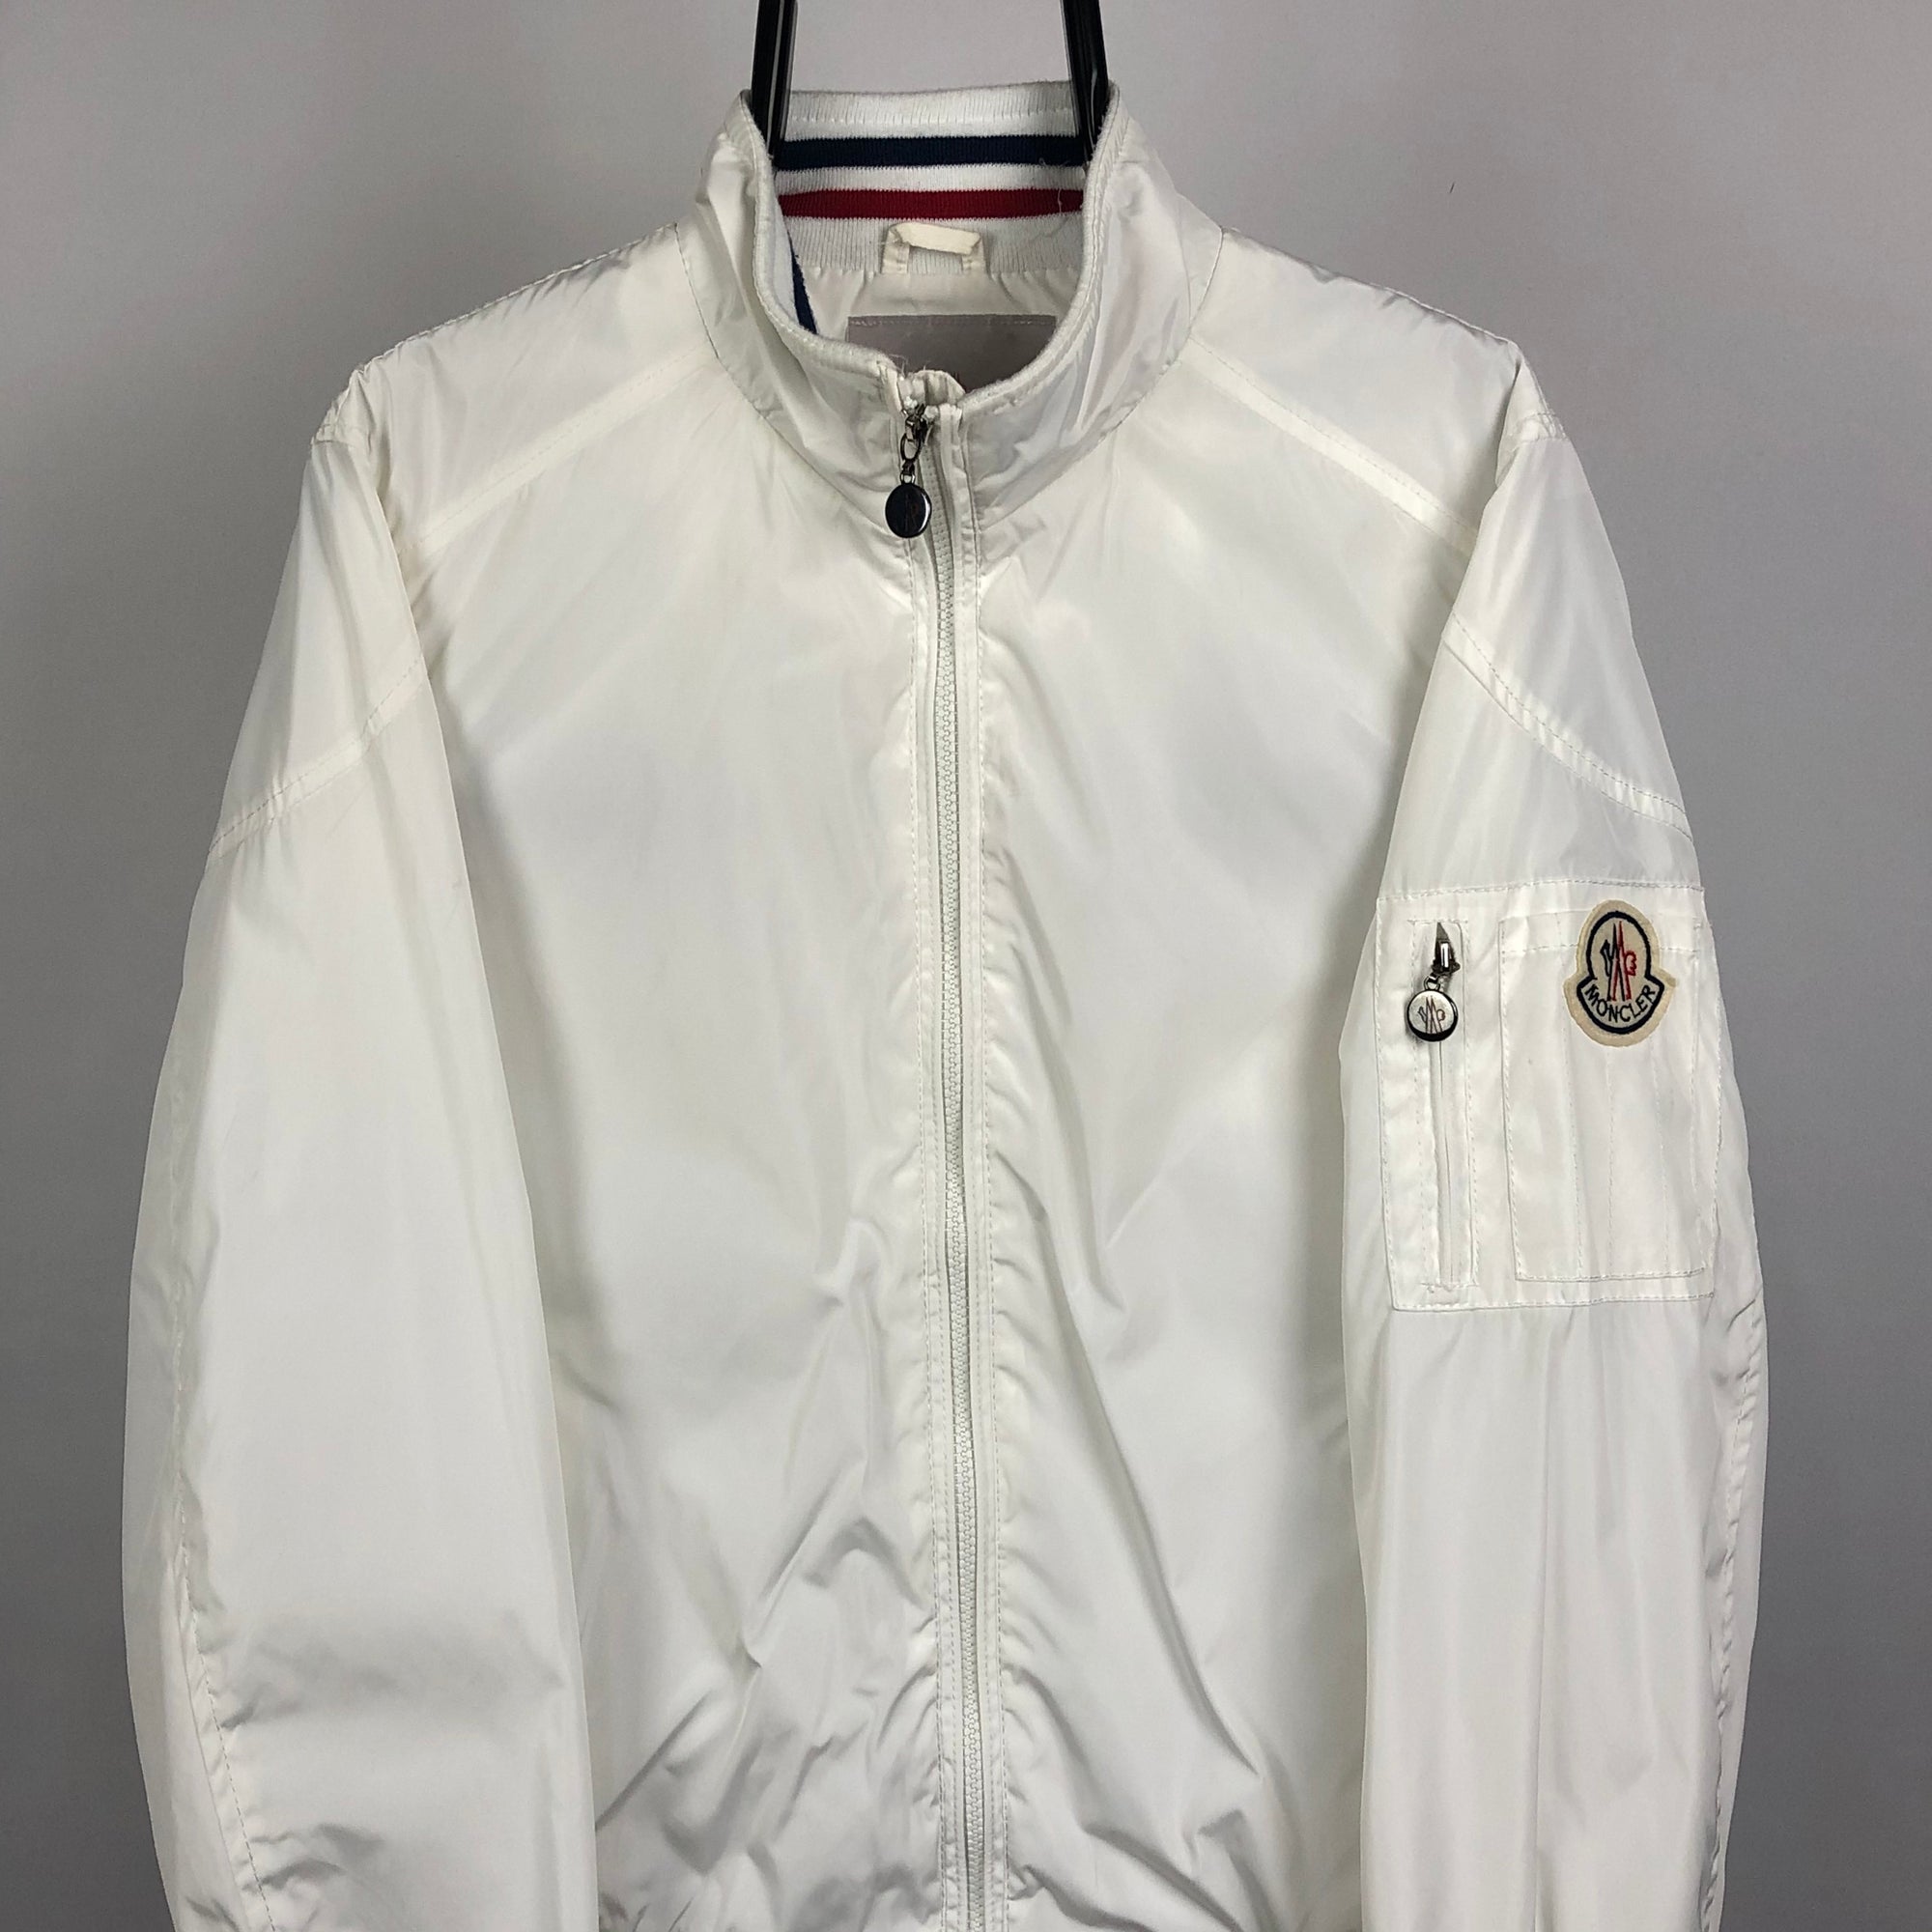 Moncler Jacket in White - Men's Medium/Women's Large